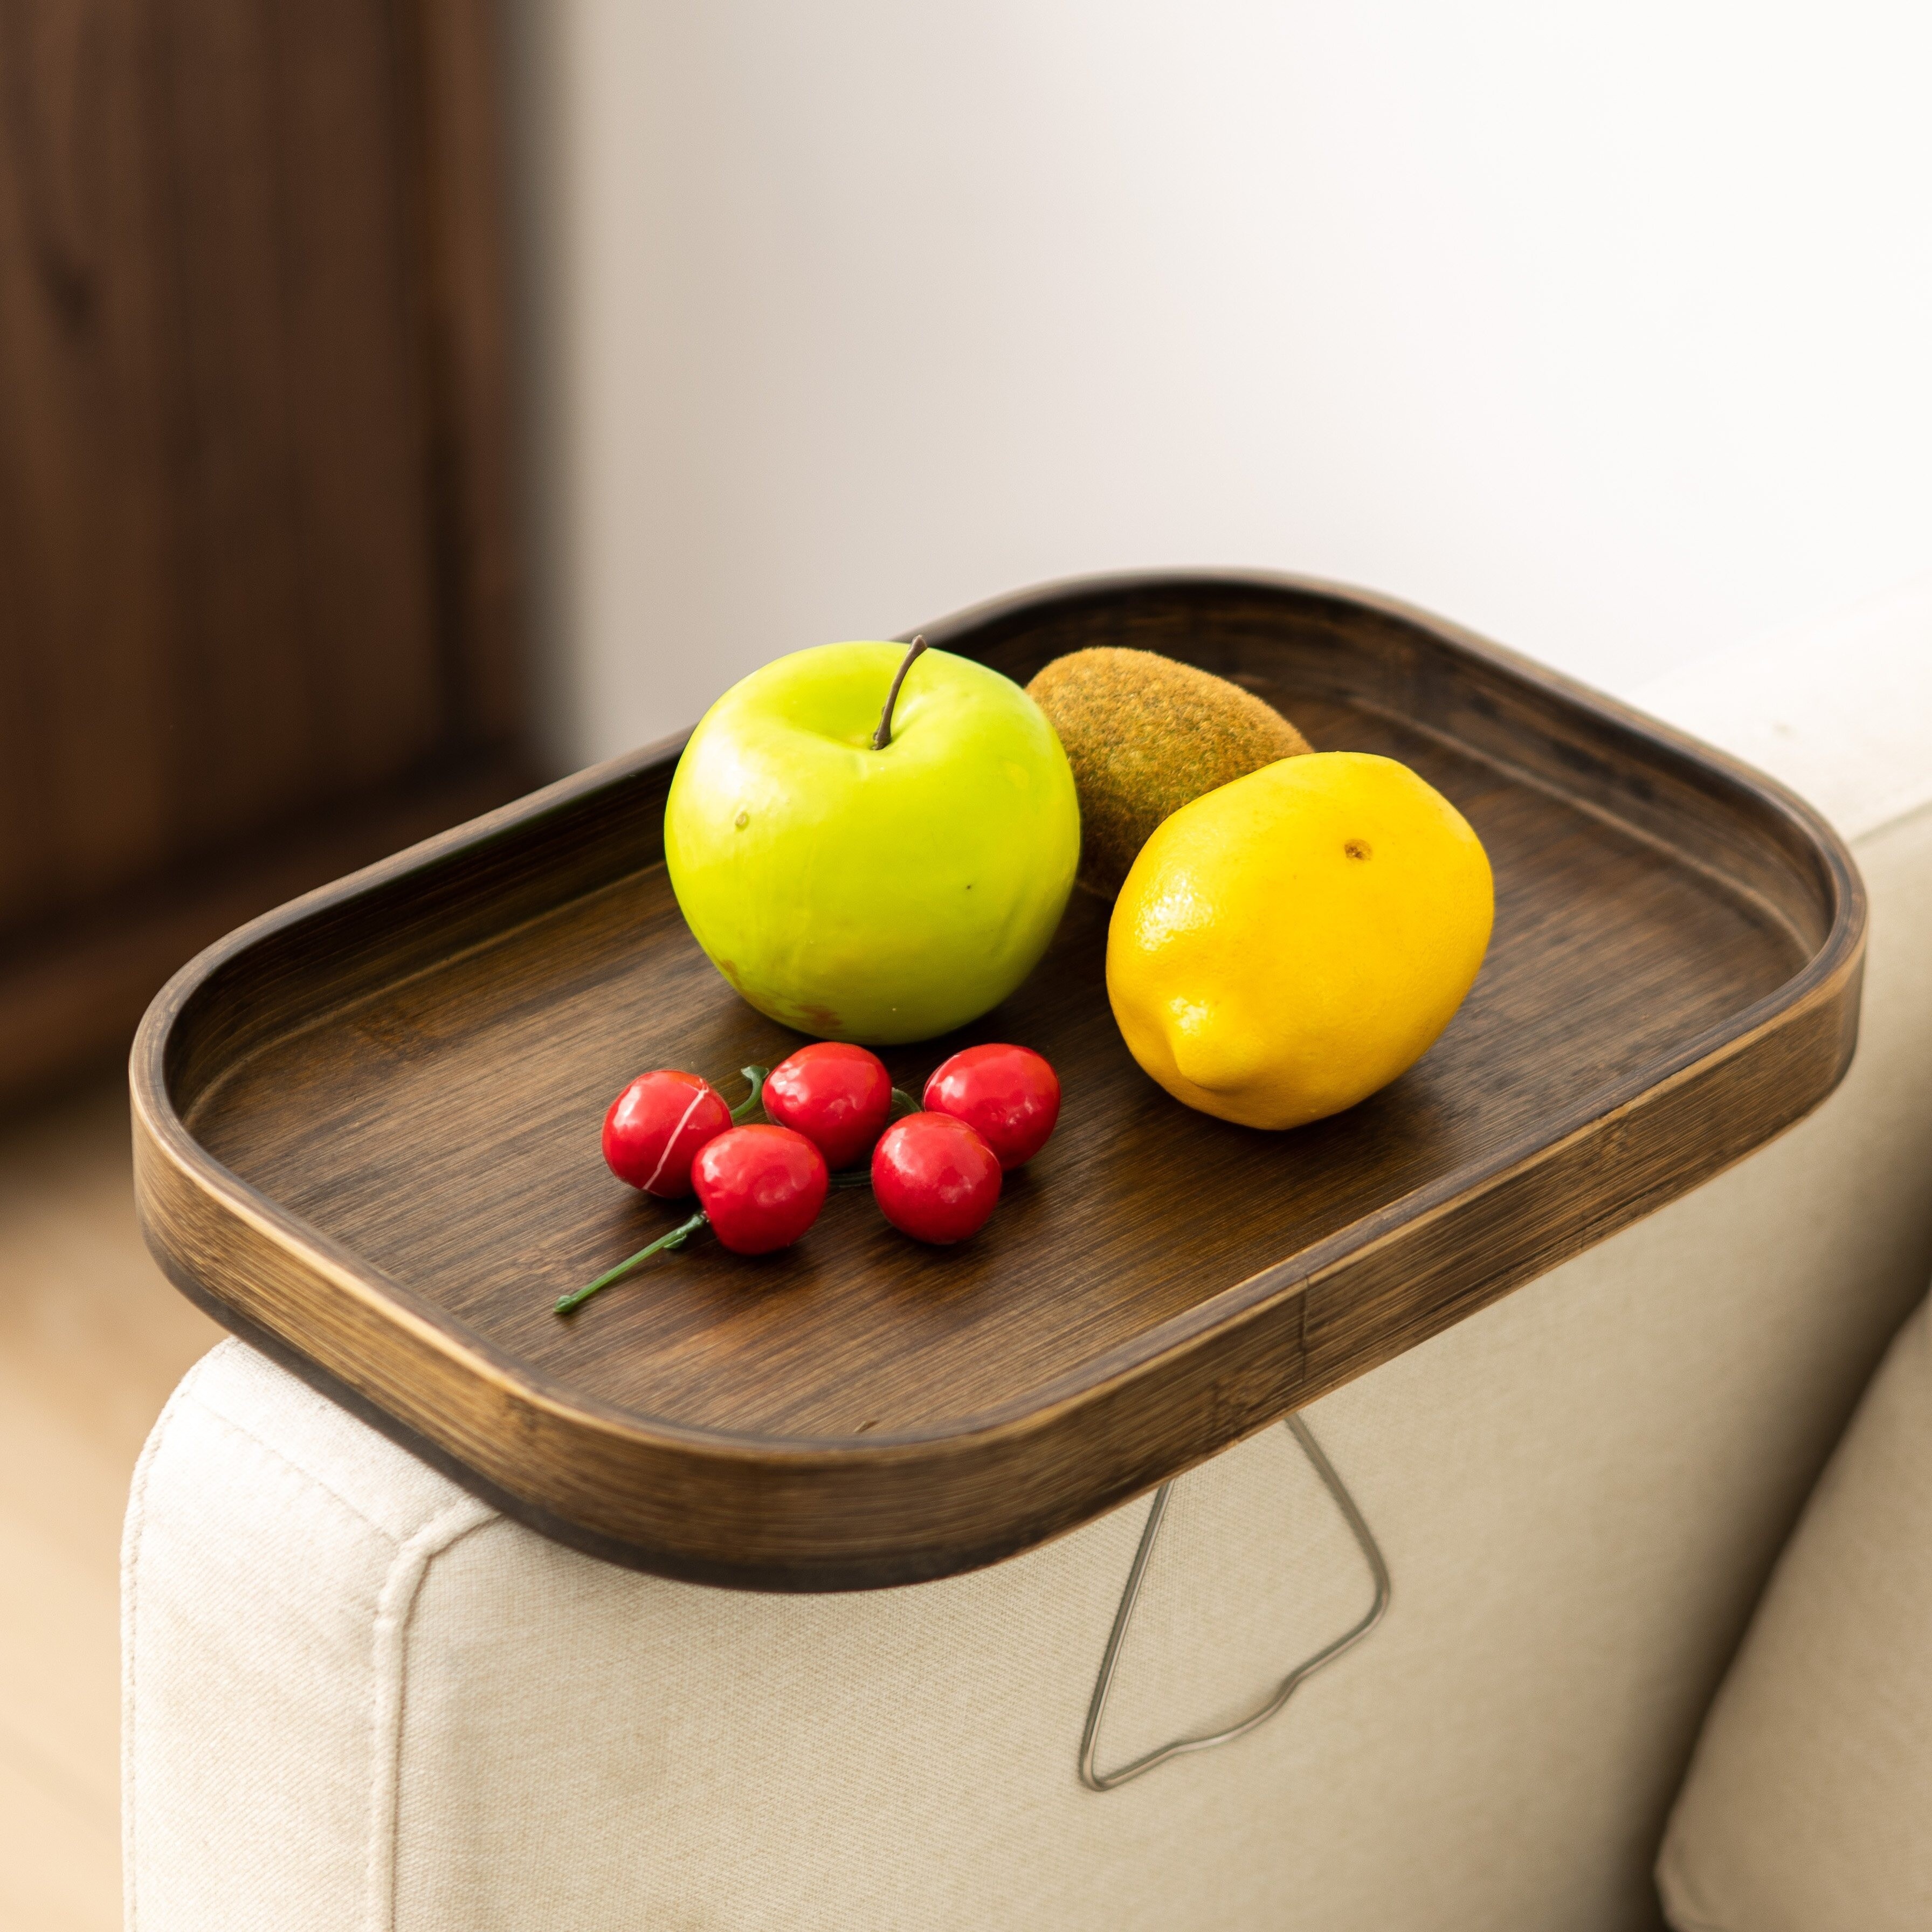 Sofa-Arm-Tablett-Tisch. Fernbedienungs- und Handy-Organizer-Halter, Ar –  SHANULKA Home Decor